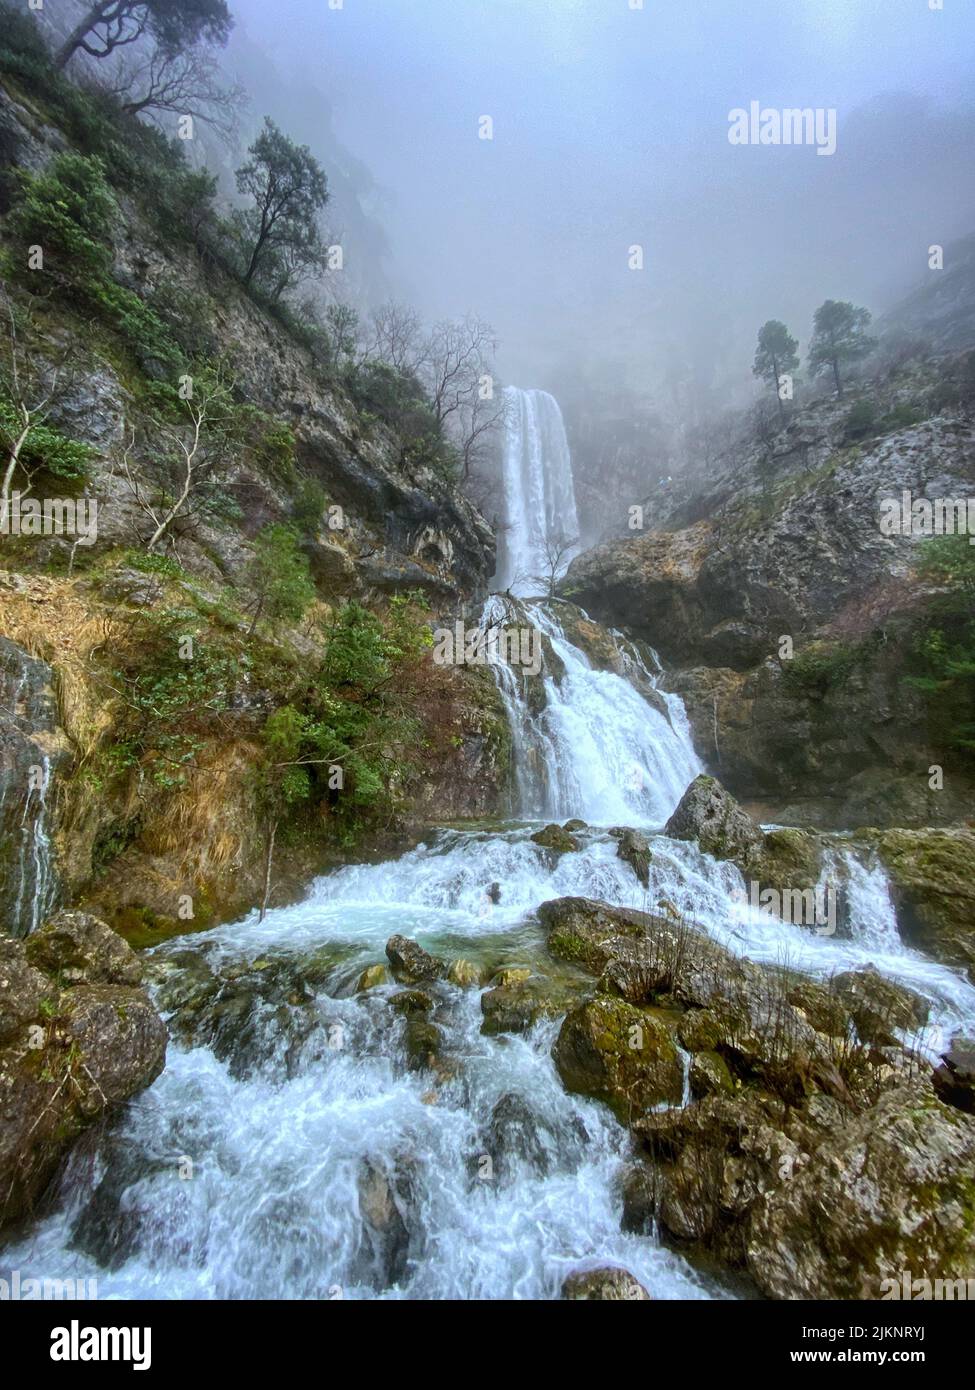 A beautiful landscape view of Nacimiento del Rio Mundo waterfalls, Albacete, Spain Stock Photo